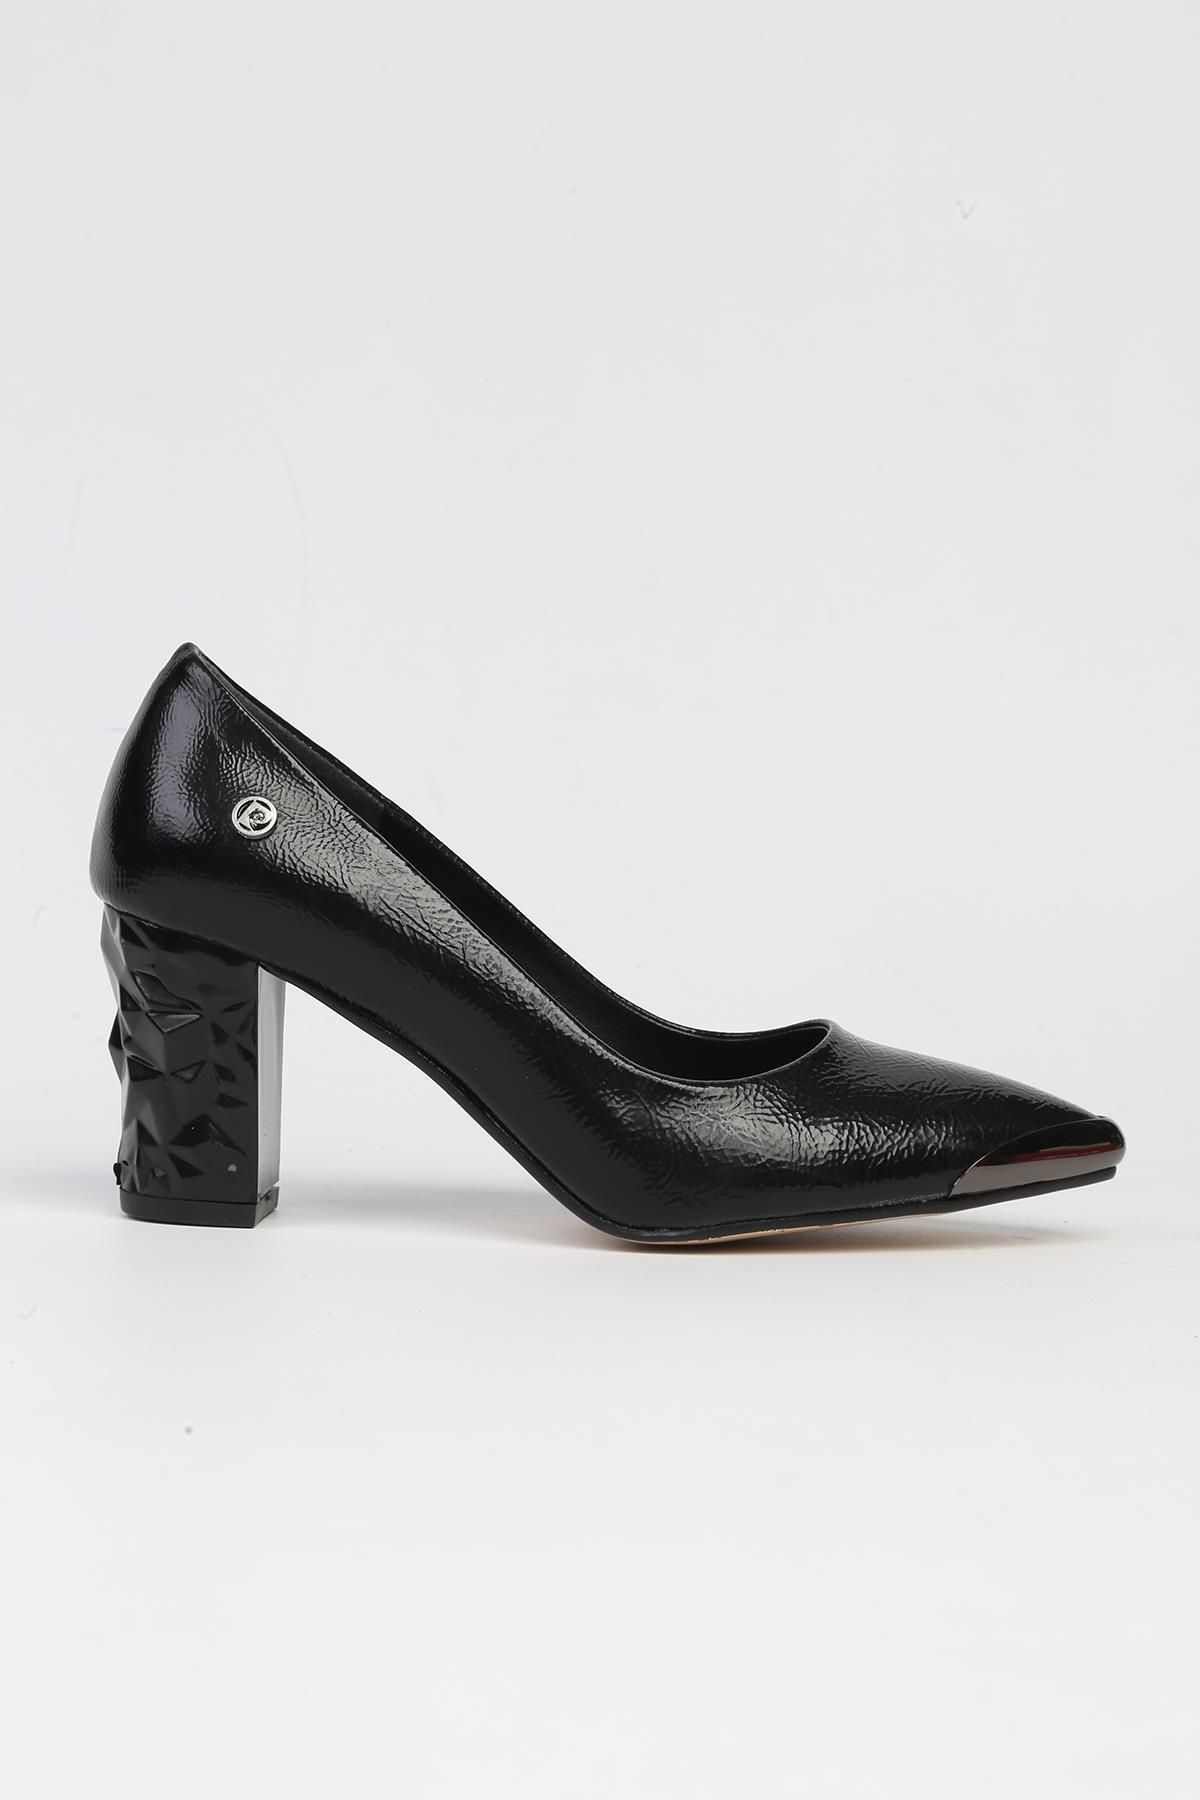 Pierre Cardin ® | PC-51752-3478 Siyah Kırısık-Kadın Topuklu Ayakkabı